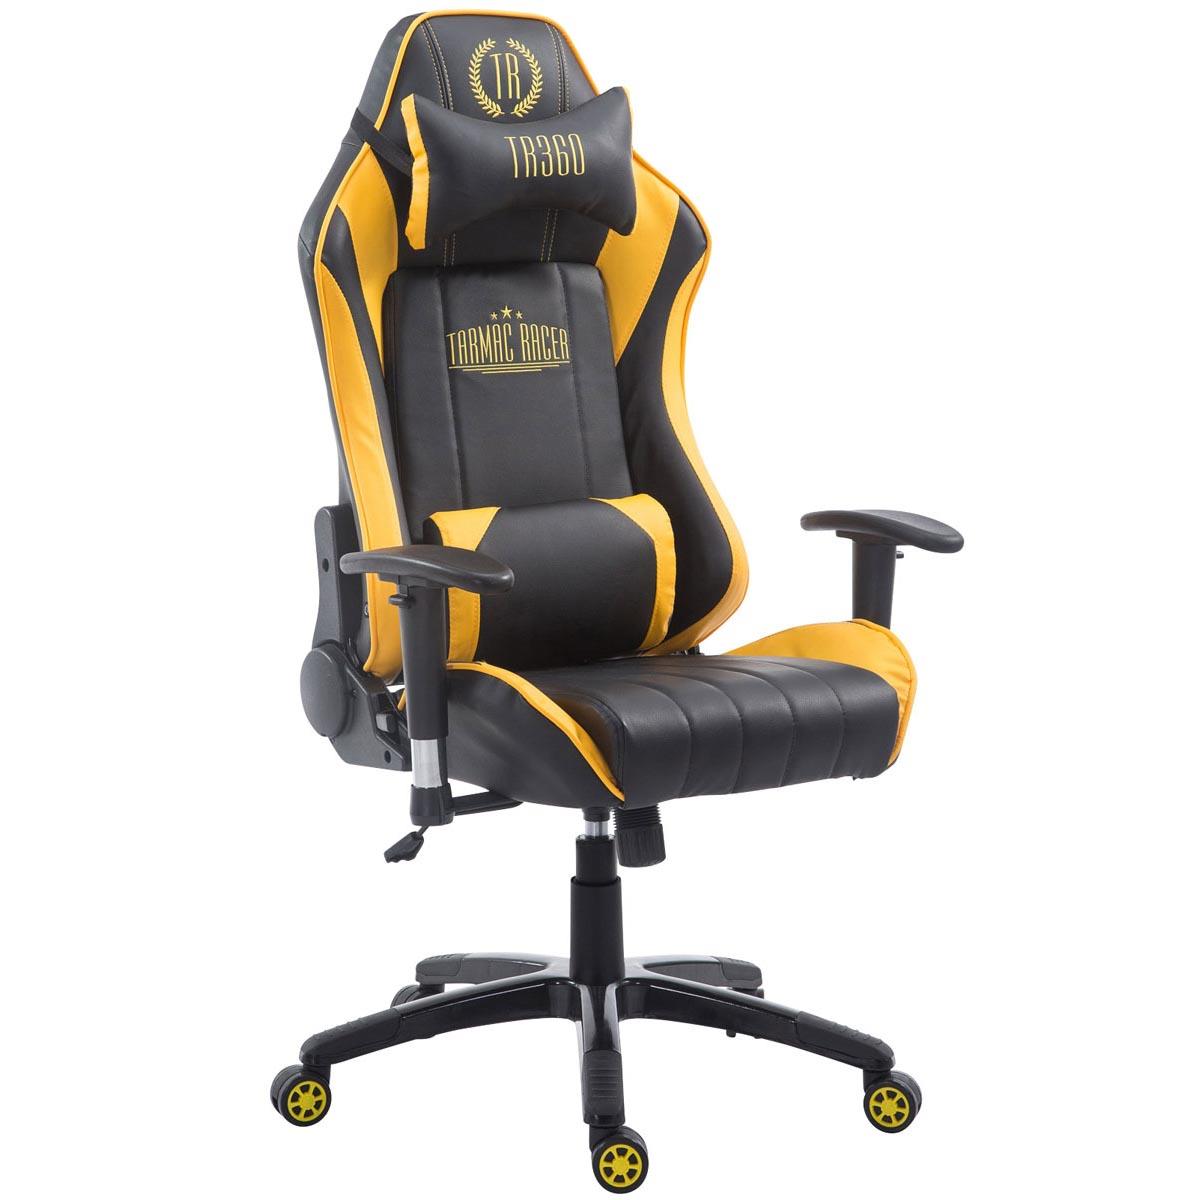 Gaming-Stuhl TURBO LEDER, neigbare Rückenlehne, Nacken- und Lordosekissen, Farbe Schwarz / Gelb